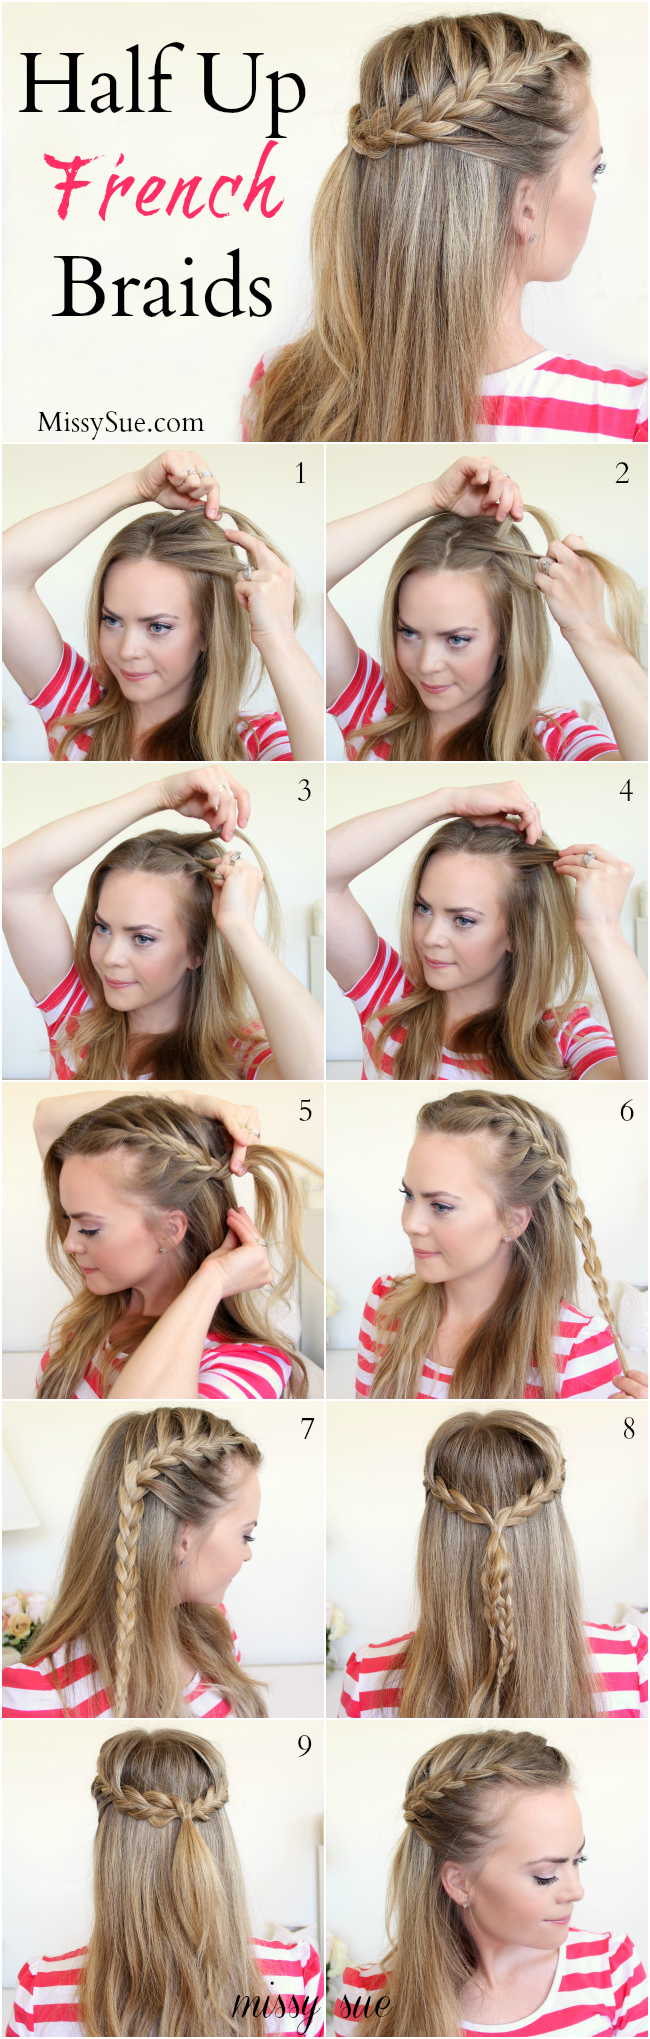 Top Hair tutorials